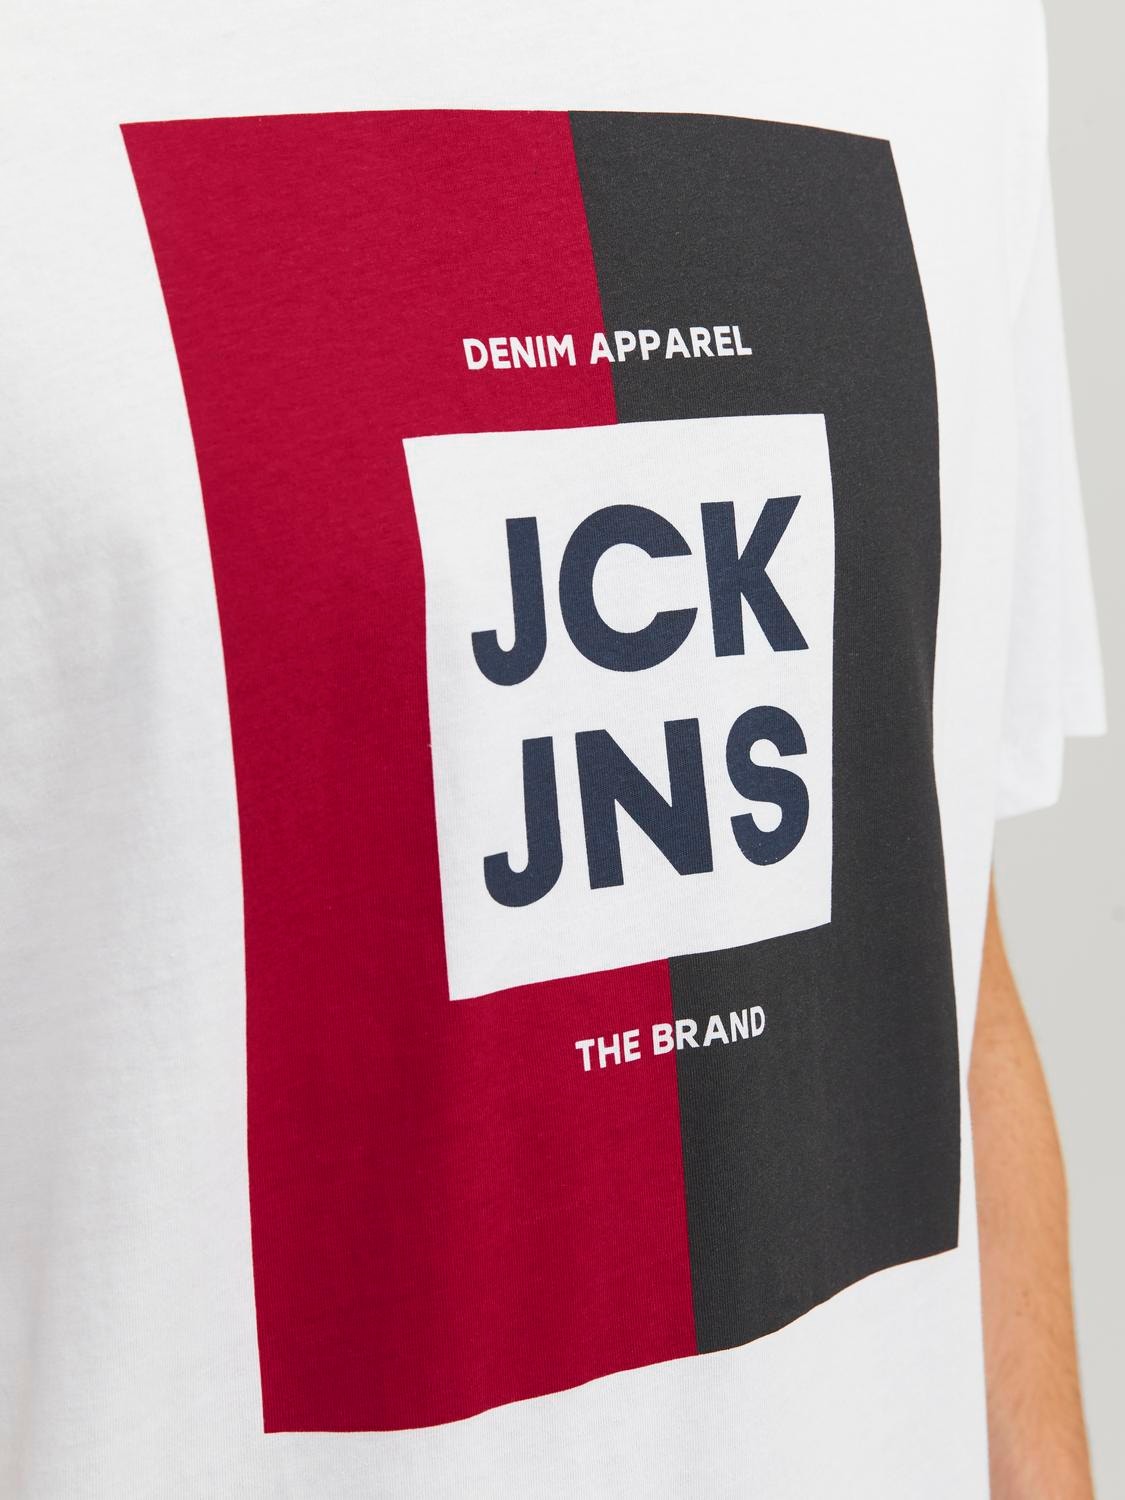 Jack & Jones 3-pack Logo Ronde hals T-shirt -Black - 12248249